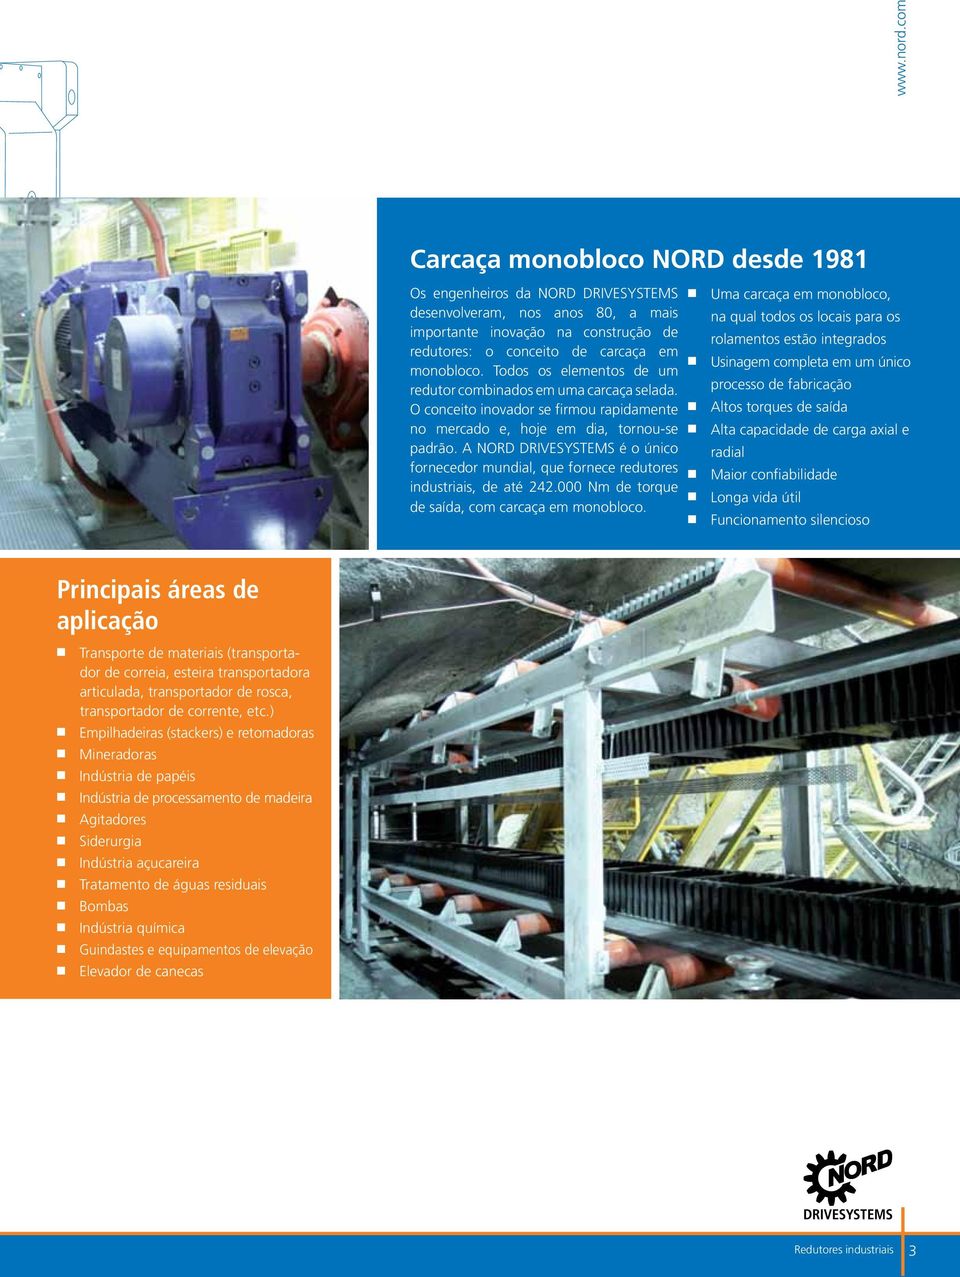 A NORD é o único fornecedor mundial, que fornece redutores industriais, de até 242.000 Nm de torque de saída, com carcaça em monobloco.